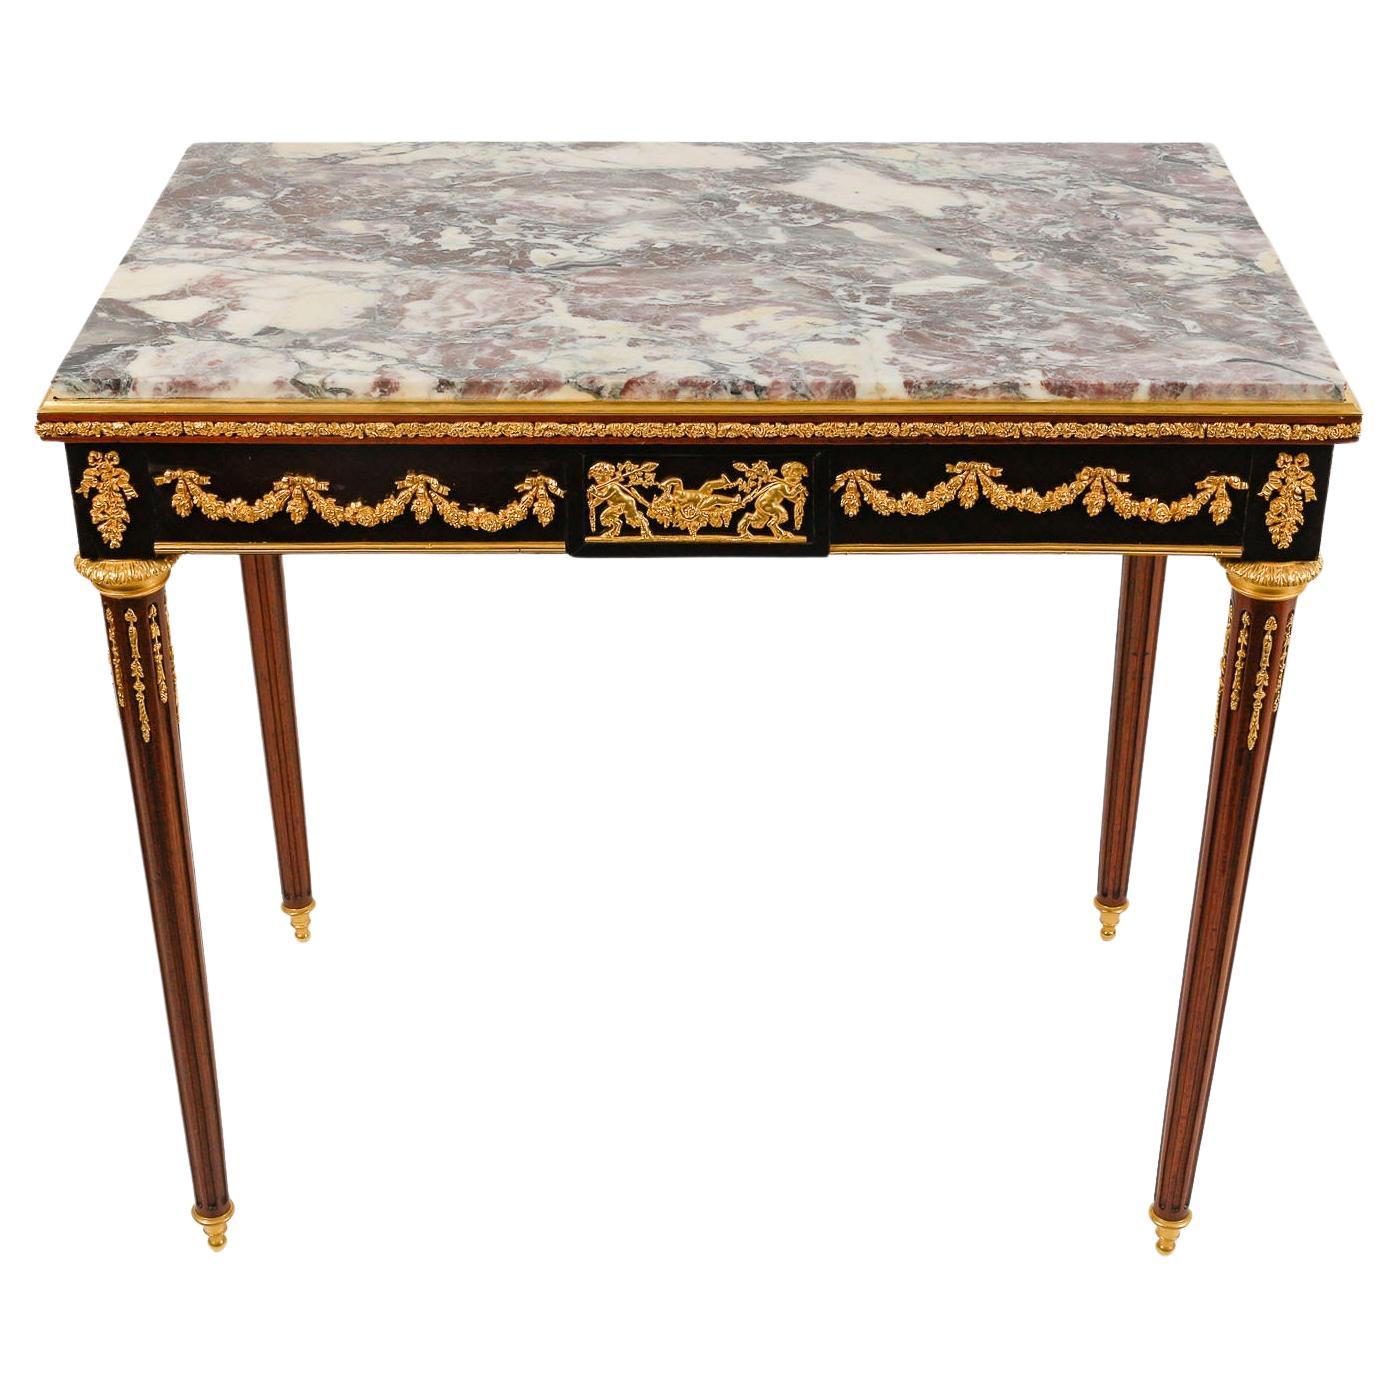 Centre Table, Small Desk 19th Century, Napoleon III Period.